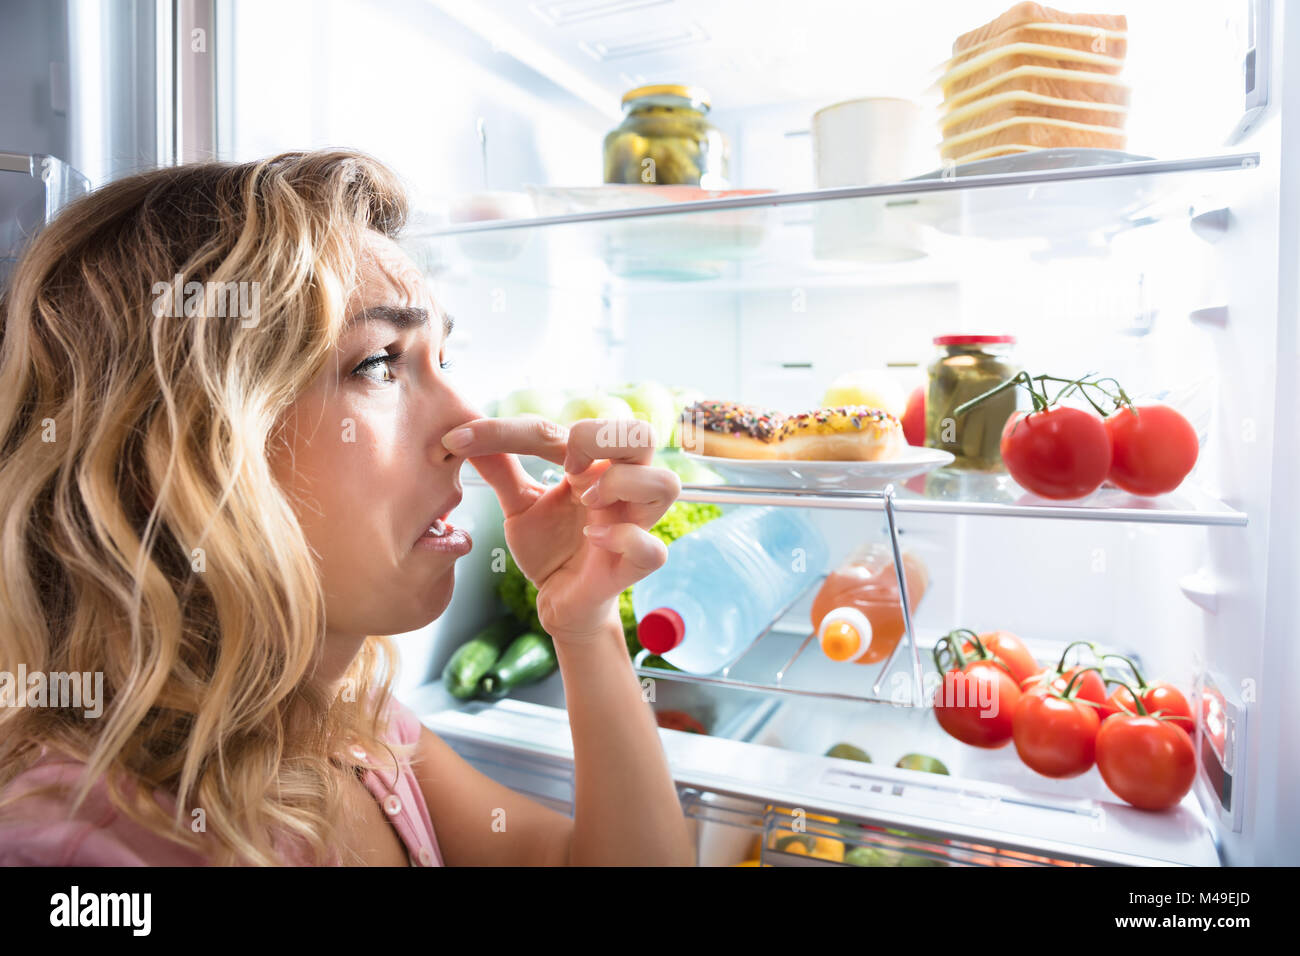 Close-up of a Young Woman Holding Her Nose près de mauvais aliments dans réfrigérateur Banque D'Images